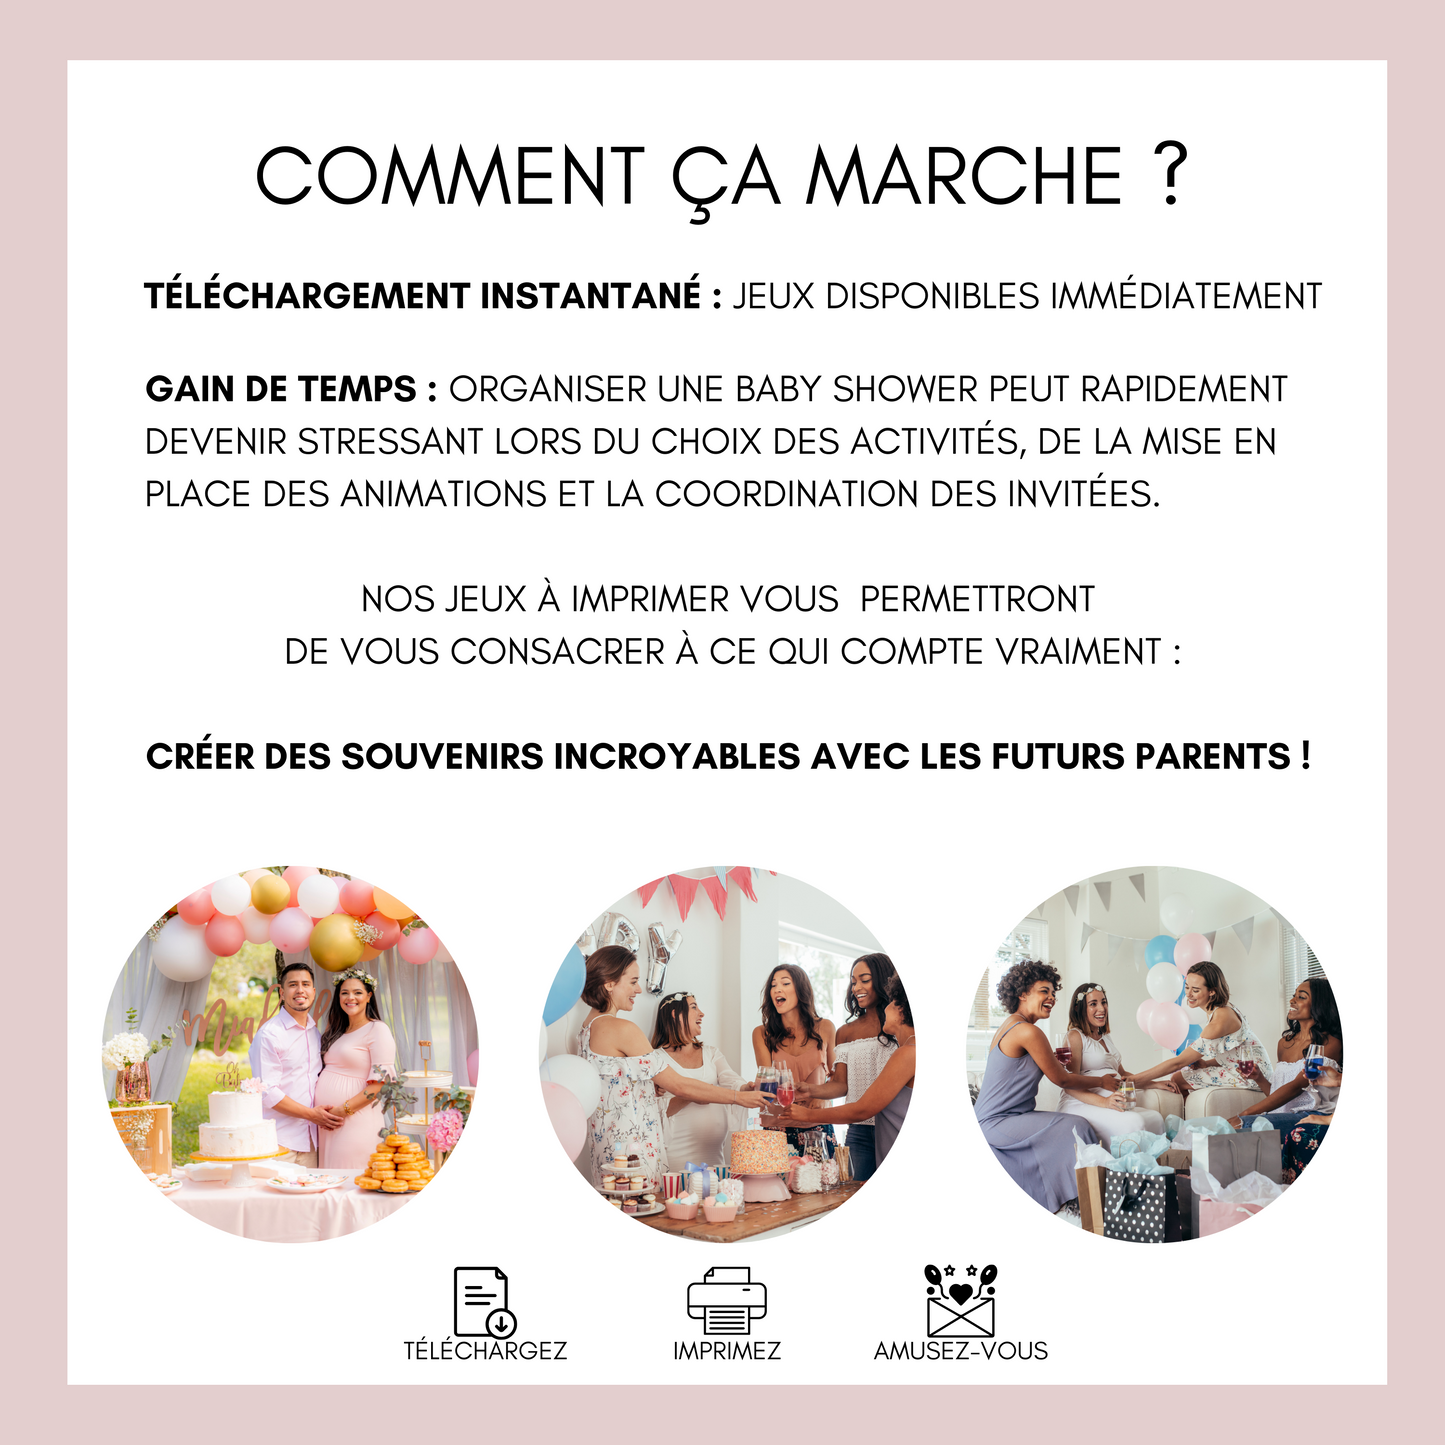 Jeux Baby Shower à imprimer en français : Téléchargez des activités pour une Fête Prénatale inoubliable ! Cartes de jeux et Prédiction Bébé Thème